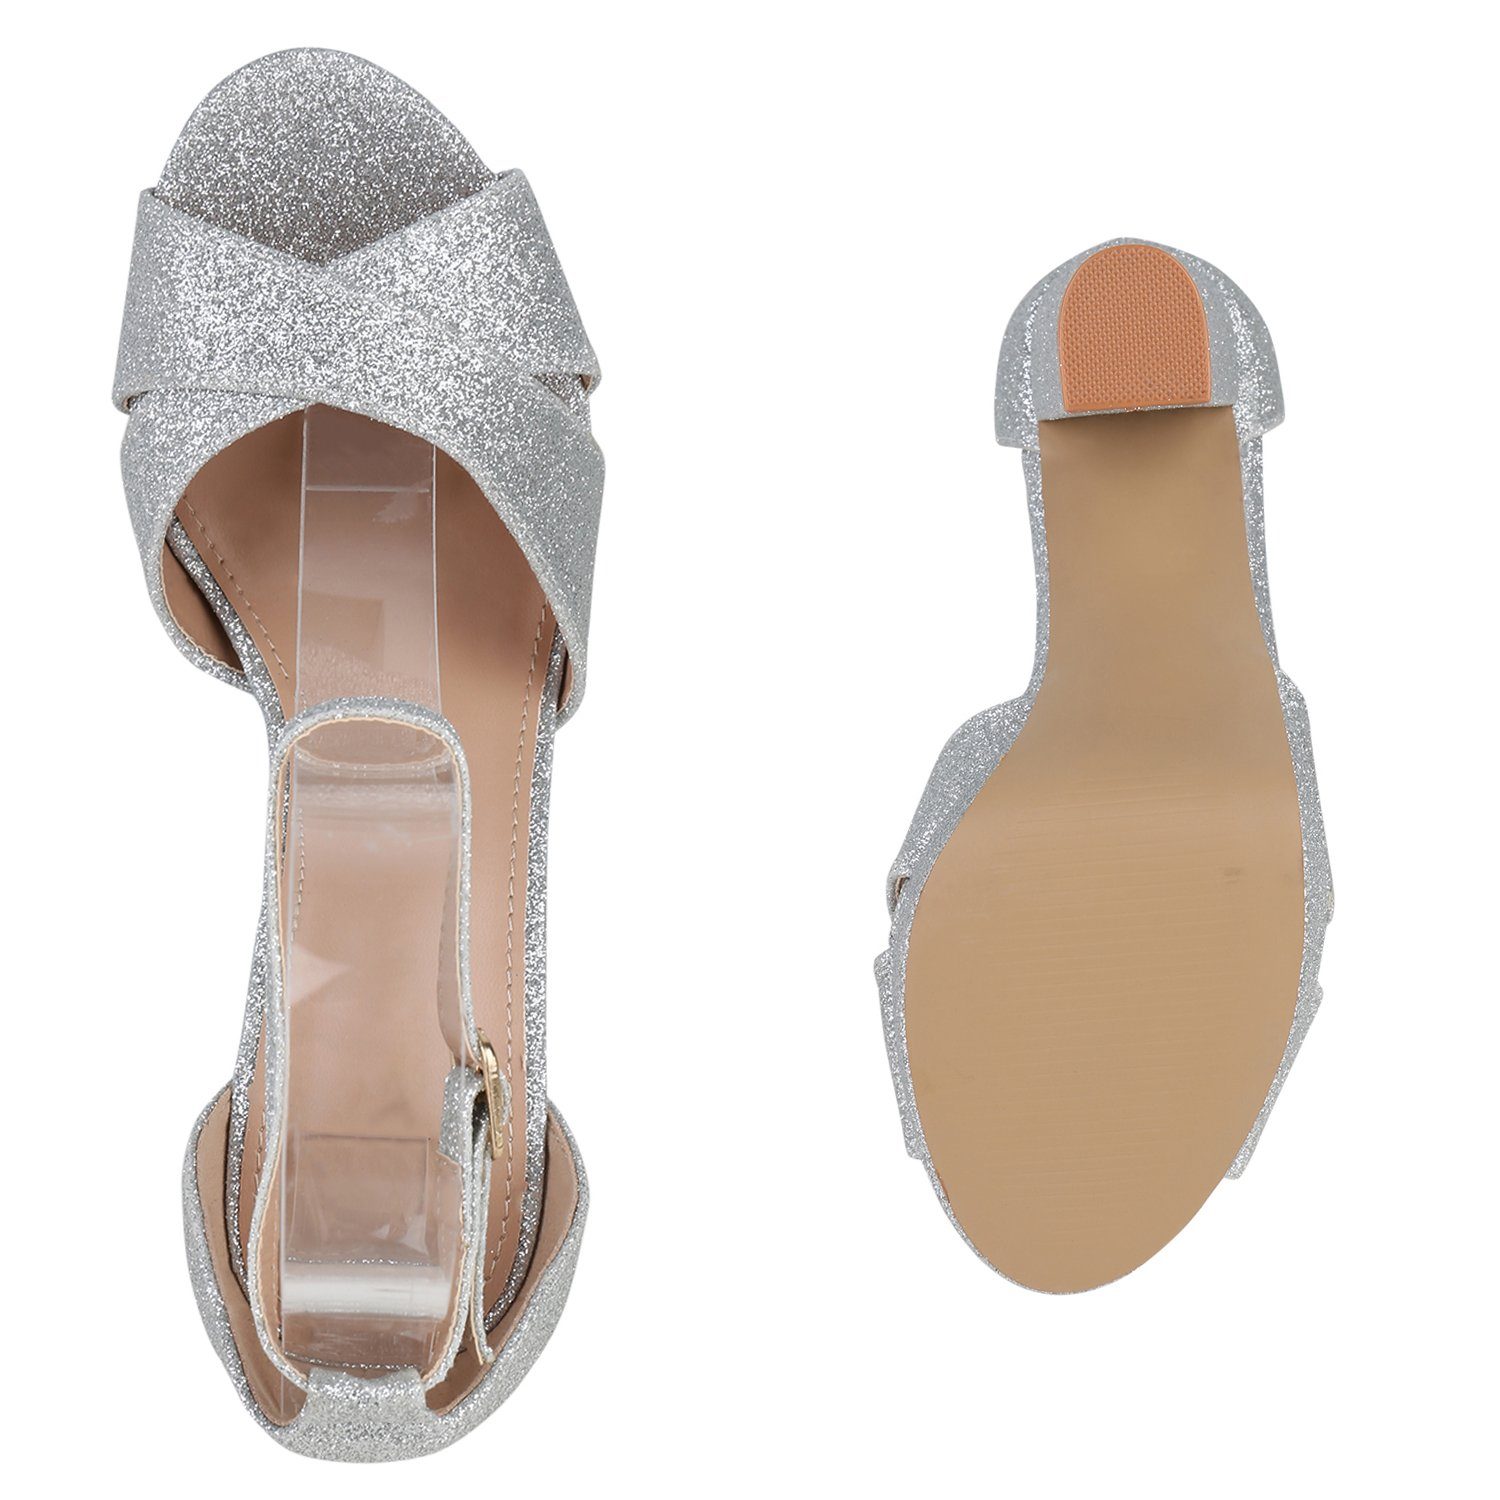 Schuhe Bequeme 840097 HILL VAN High-Heel-Sandalette Silber